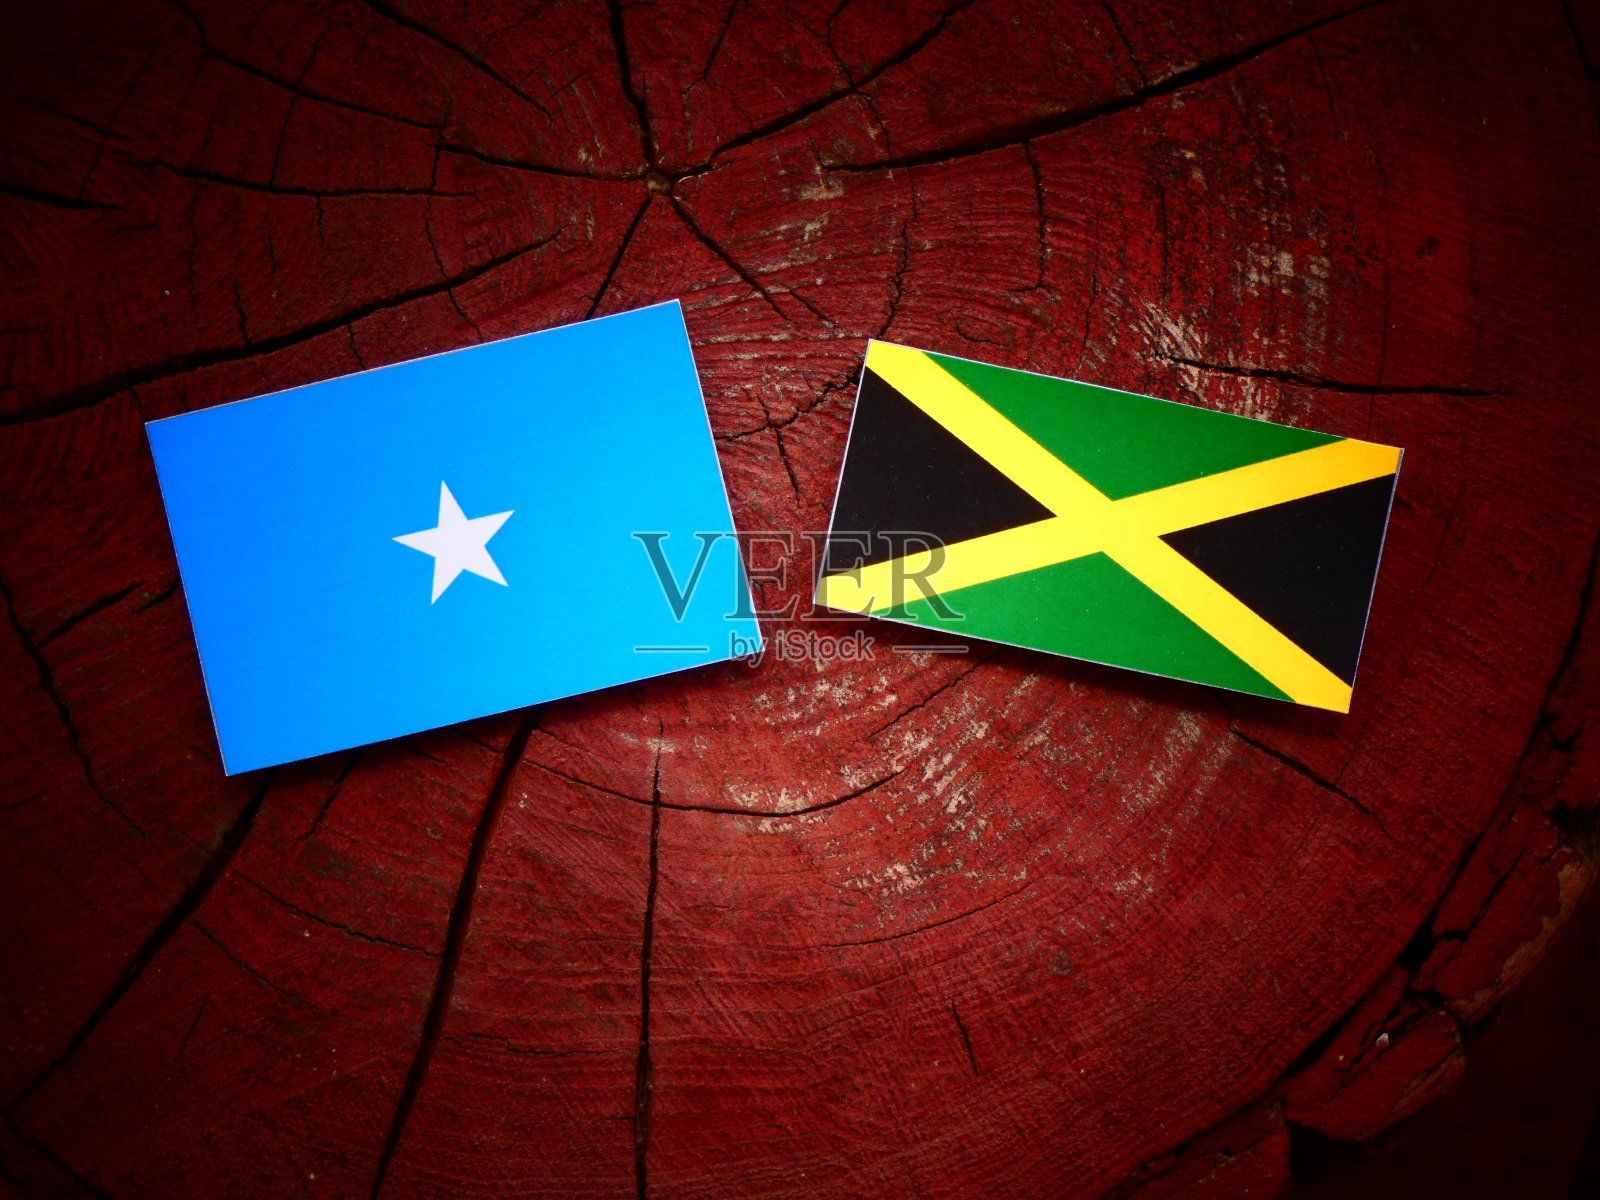 孤立的树桩上悬挂着索马里国旗和牙买加国旗照片摄影图片